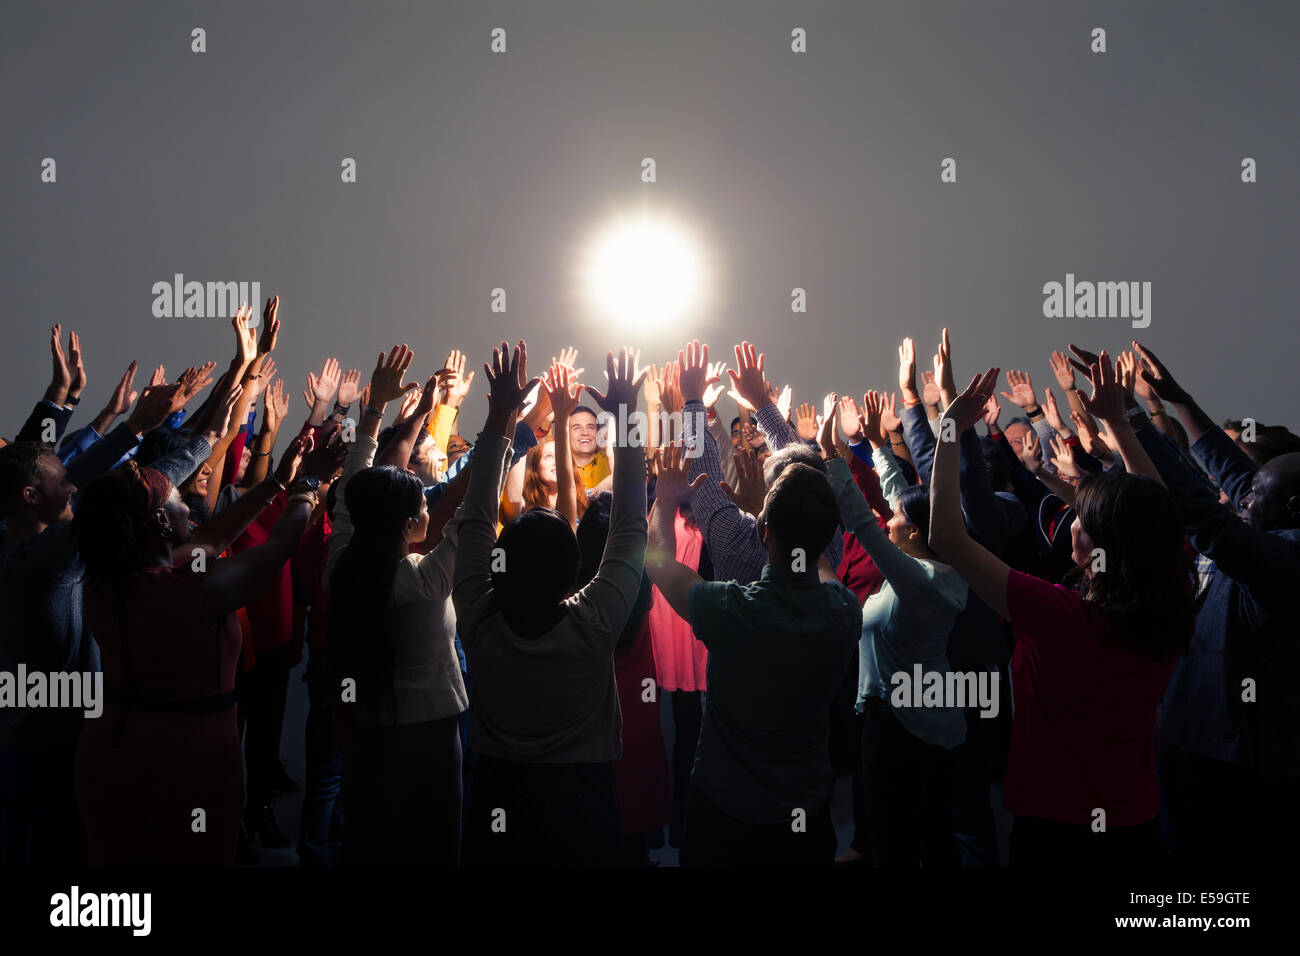 Clientela diversa con los brazos levantados alrededor de luz brillante Foto de stock